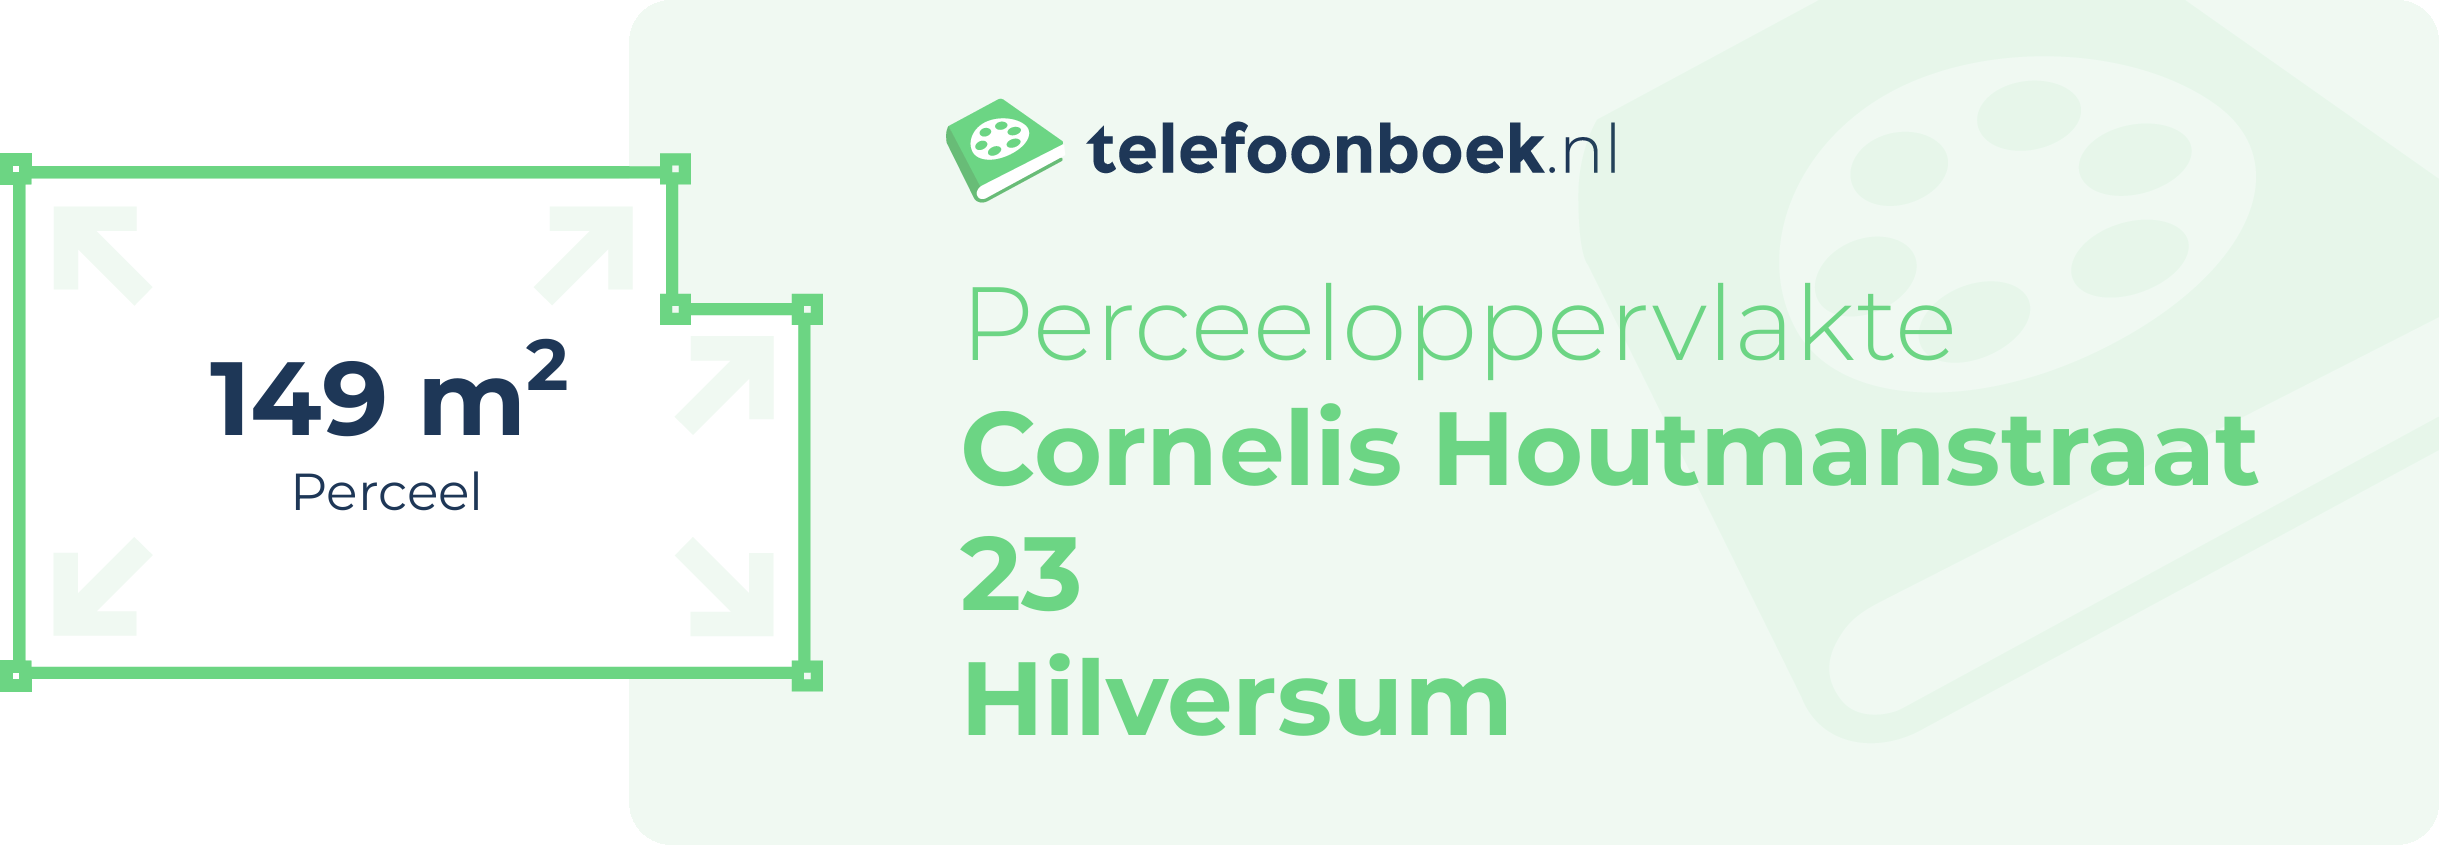 Perceeloppervlakte Cornelis Houtmanstraat 23 Hilversum